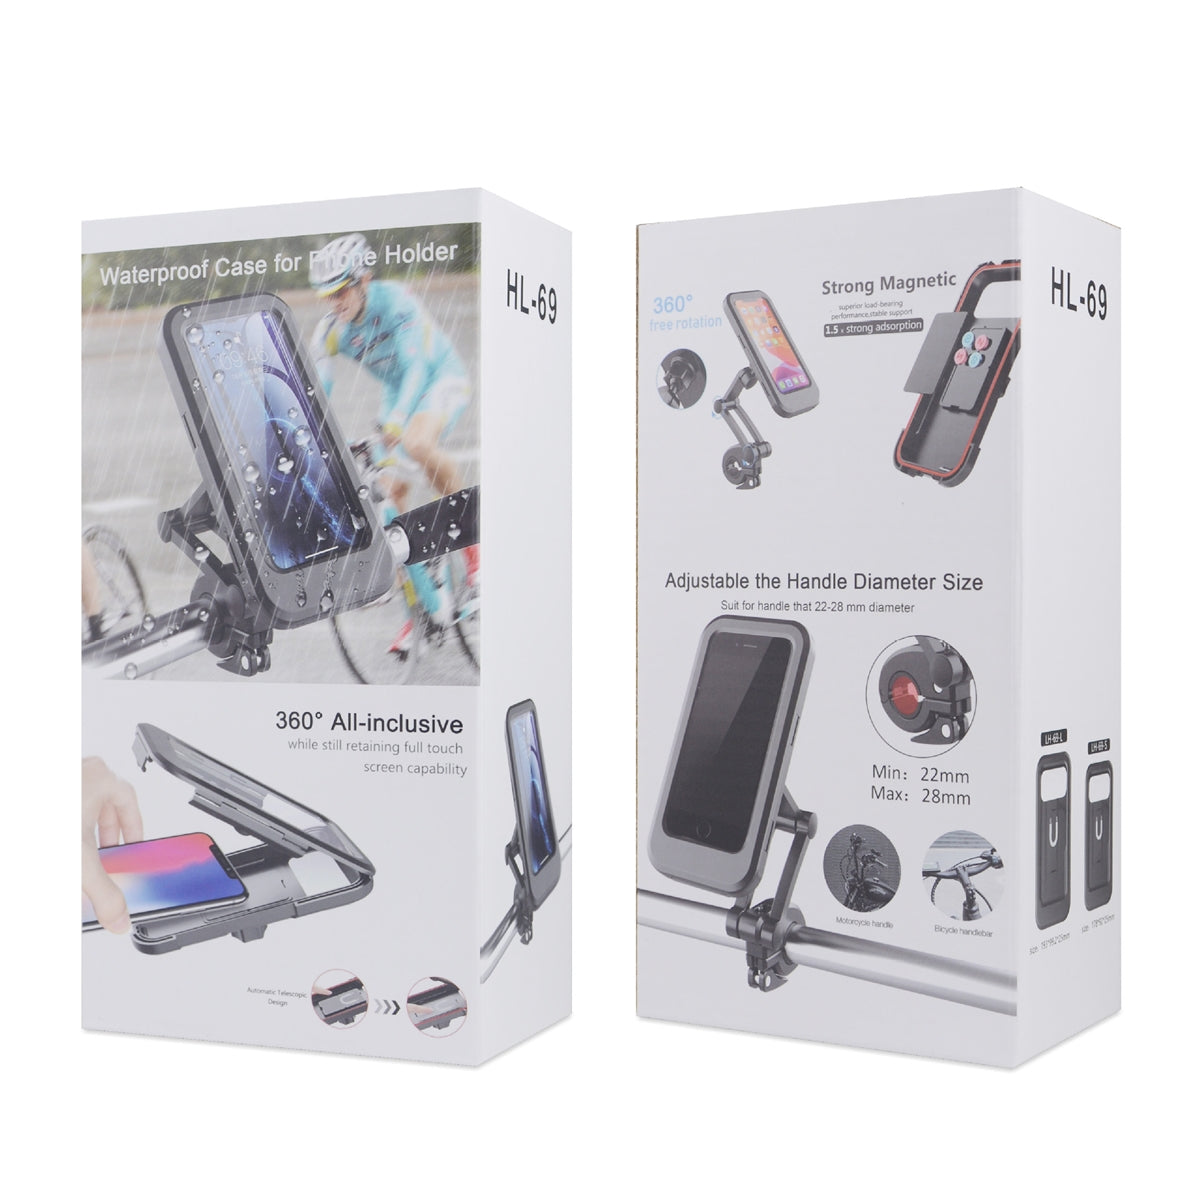 HL-69 Adjustable Magnetic Waterproof Bicycle 6.5" Phone Holder Black